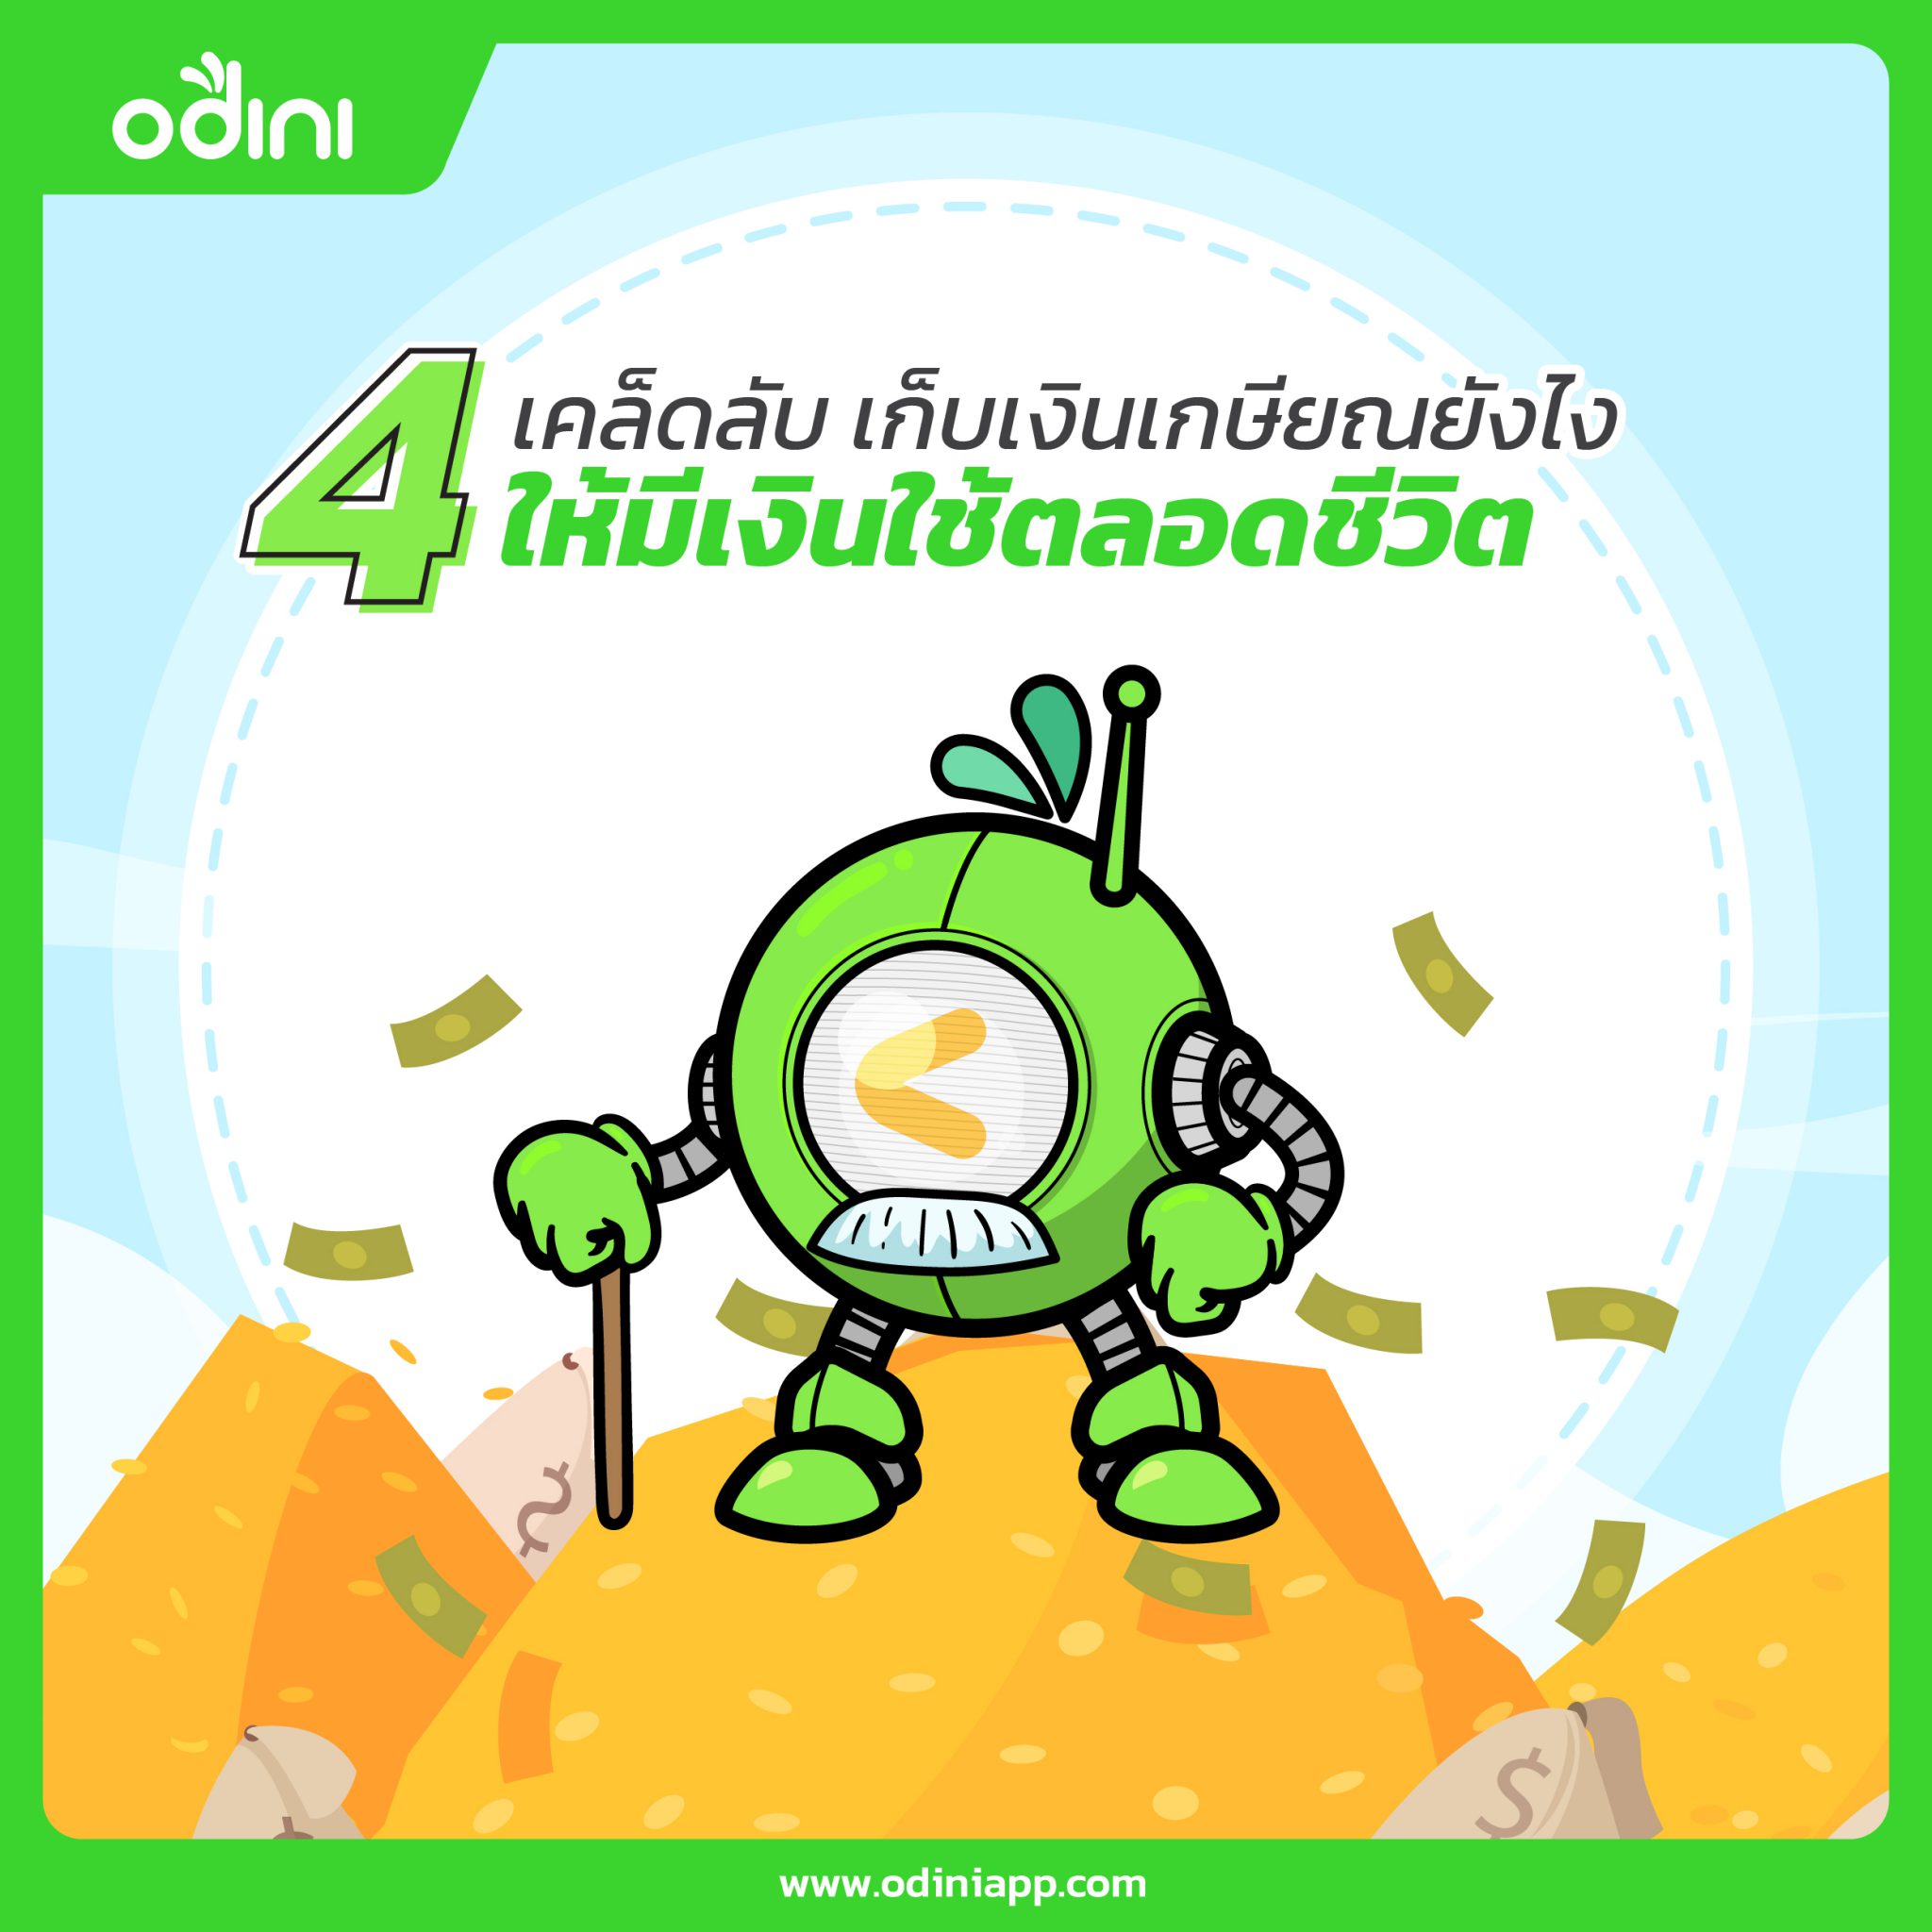 4 เคล็ดลับ เก็บเงินเกษียณยังไง ให้มีเงินใช้ตลอดชีวิต – Odini  ลงทุนกองทุนอัตโนมัติด้วย Robo-Advisor แอปแรกในไทย